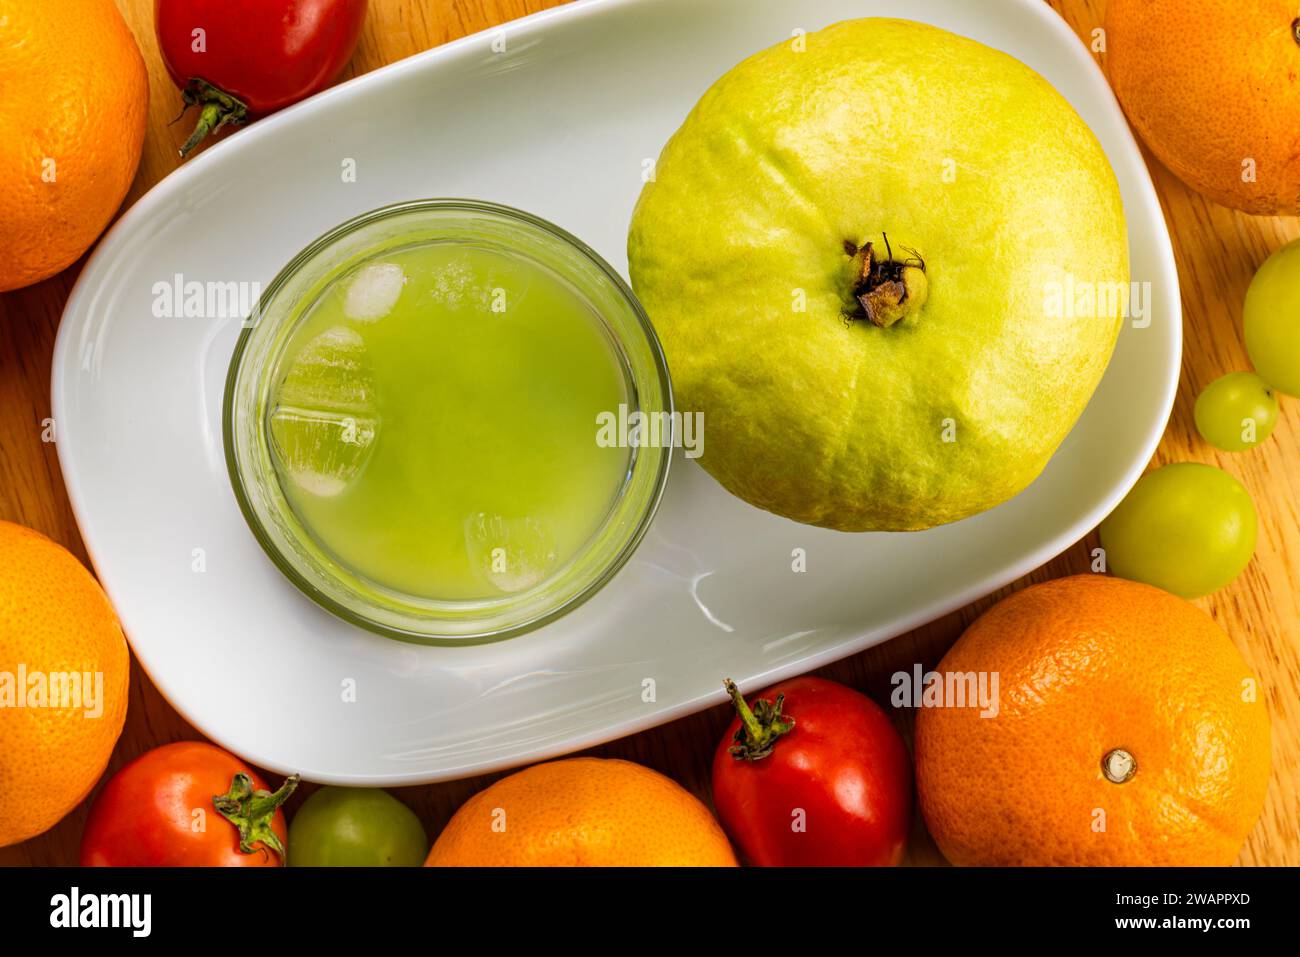 Vista superior de jugo de guayaba dulce fresco y frío en vidrio transparente y fruta de guayaba fresca madura en bandeja de cerámica blanca con tomate rojo, naranjas, uvas en woo Foto de stock